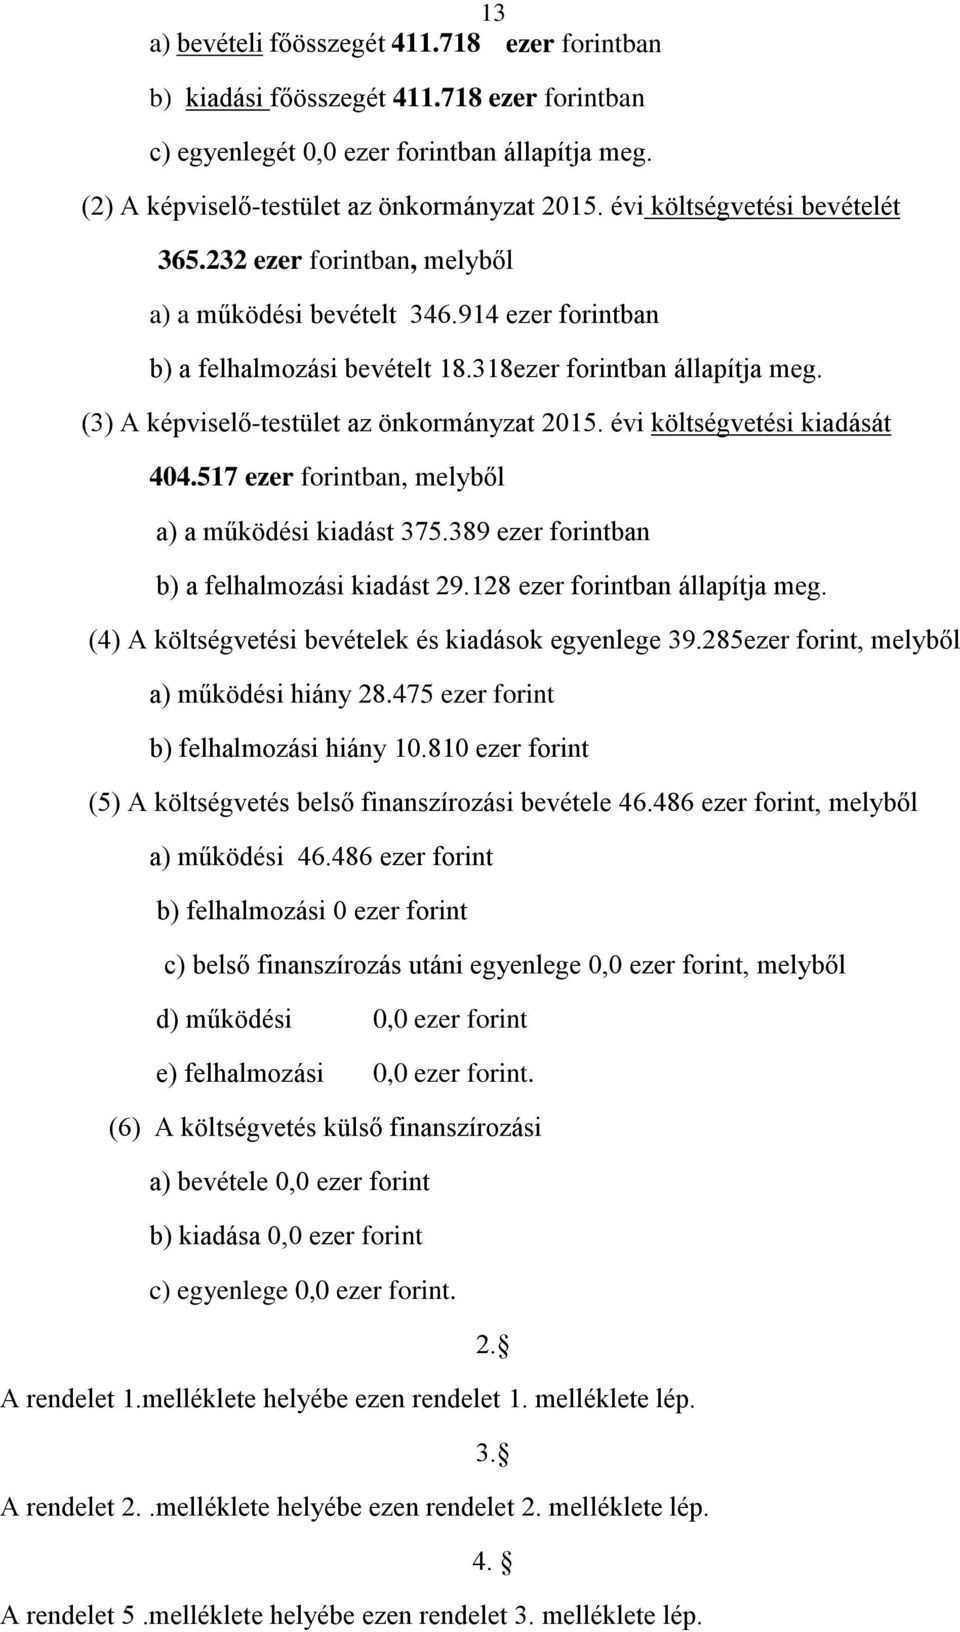 (3) A képviselő-testület az önkormányzat 2015. évi költségvetési kiadását 404.517 ezer forintban, melyből a) a működési kiadást 375.389 ezer forintban b) a felhalmozási kiadást 29.